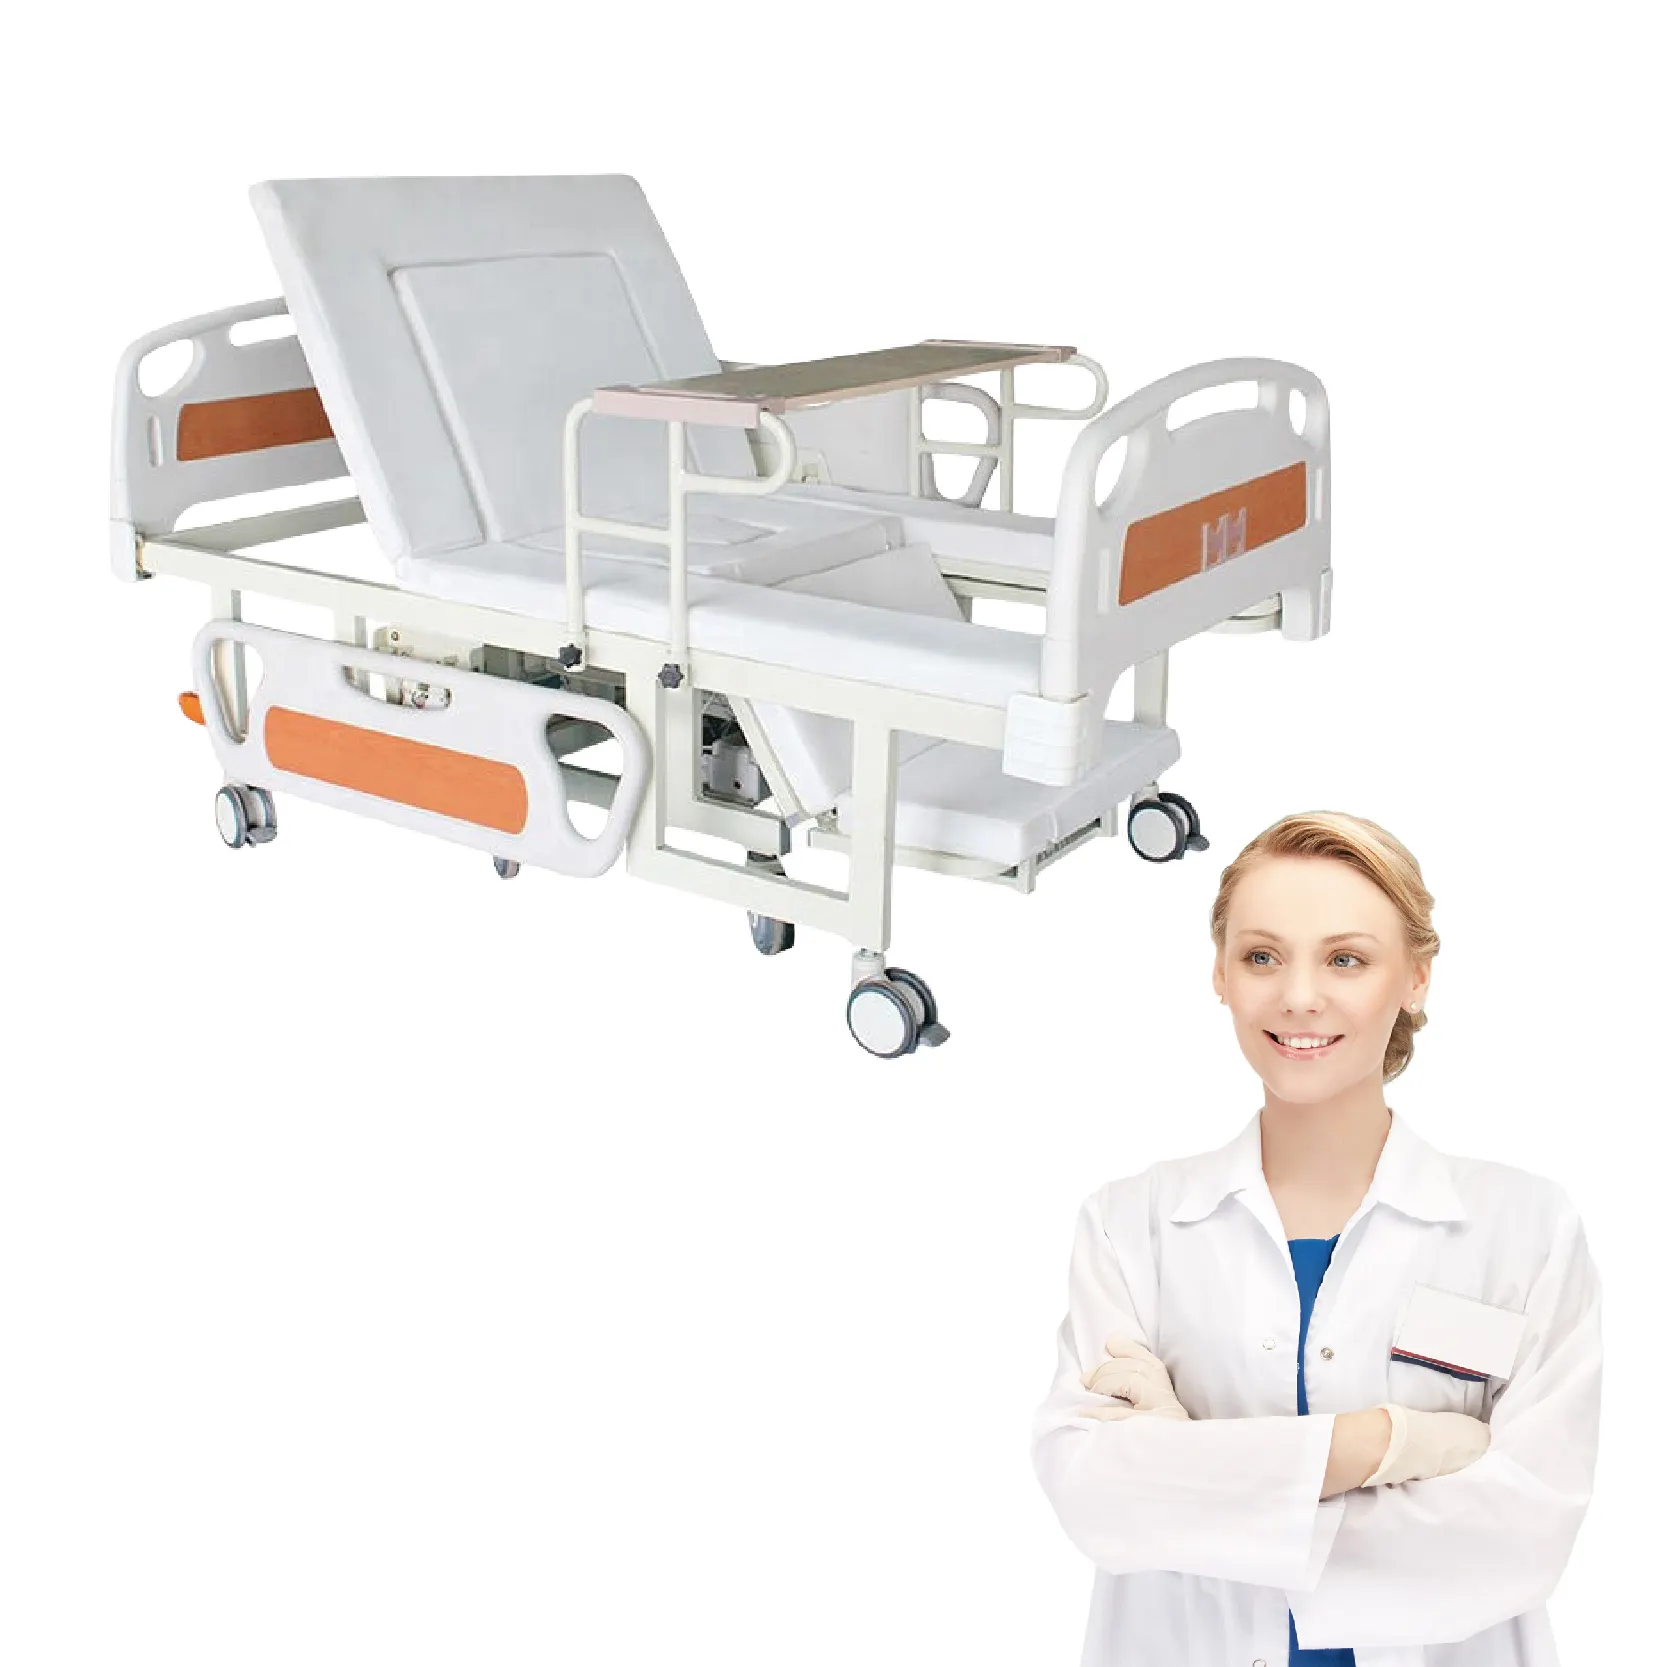 Cama de hospital manual com 2 manivelas para cuidados de enfermagem médica, venda por atacado de fábrica, com controle remoto manual, novidade